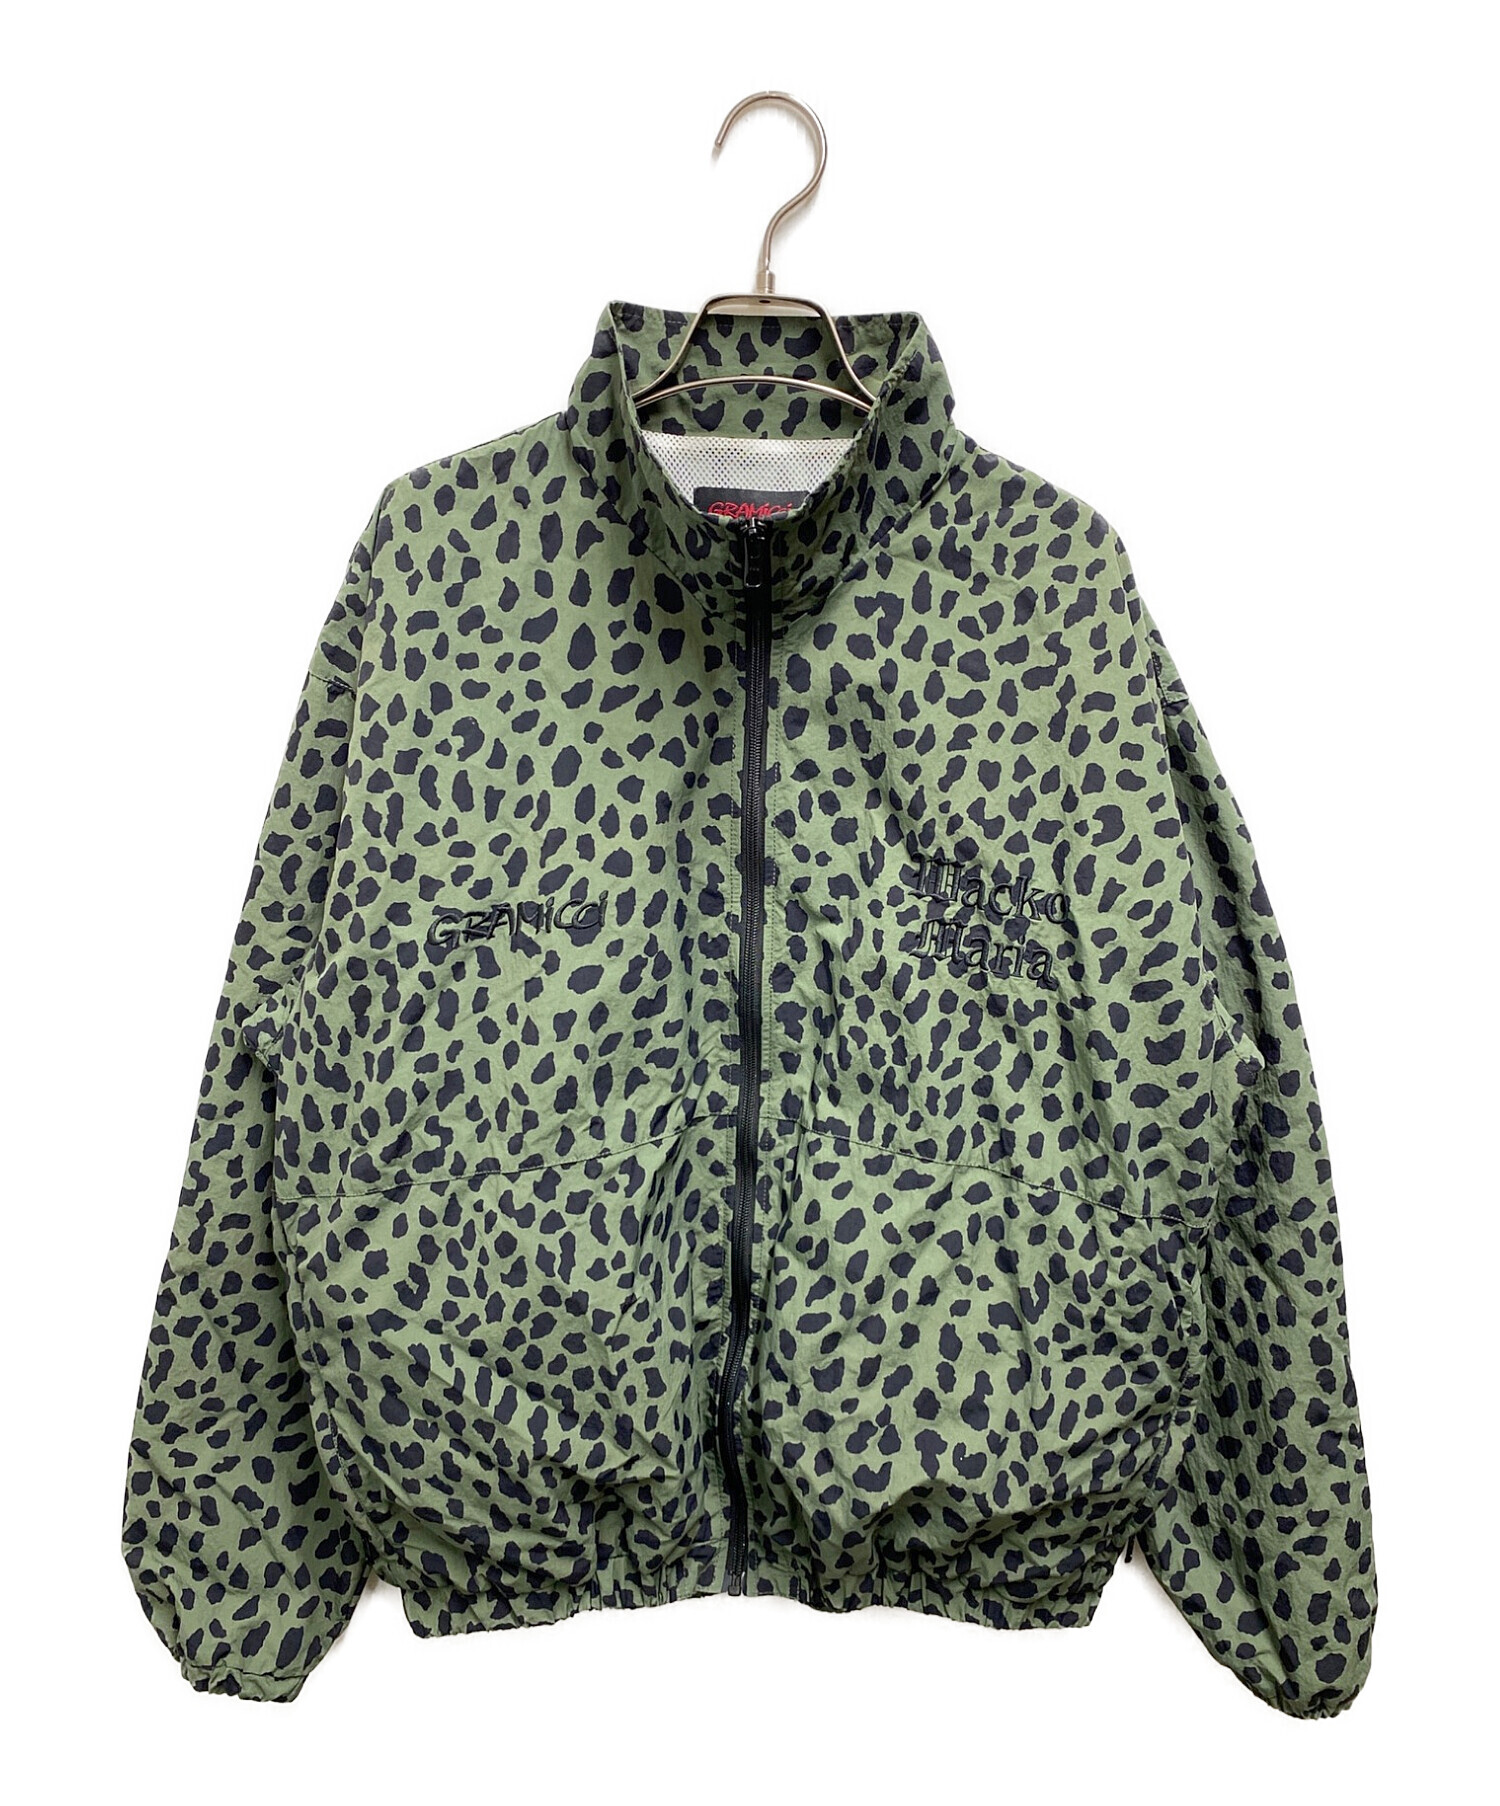 GRAMICCI (グラミチ) WACKO MARIA (ワコマリア) レオパードトラックジャケット ブラック×グリーン サイズ:S